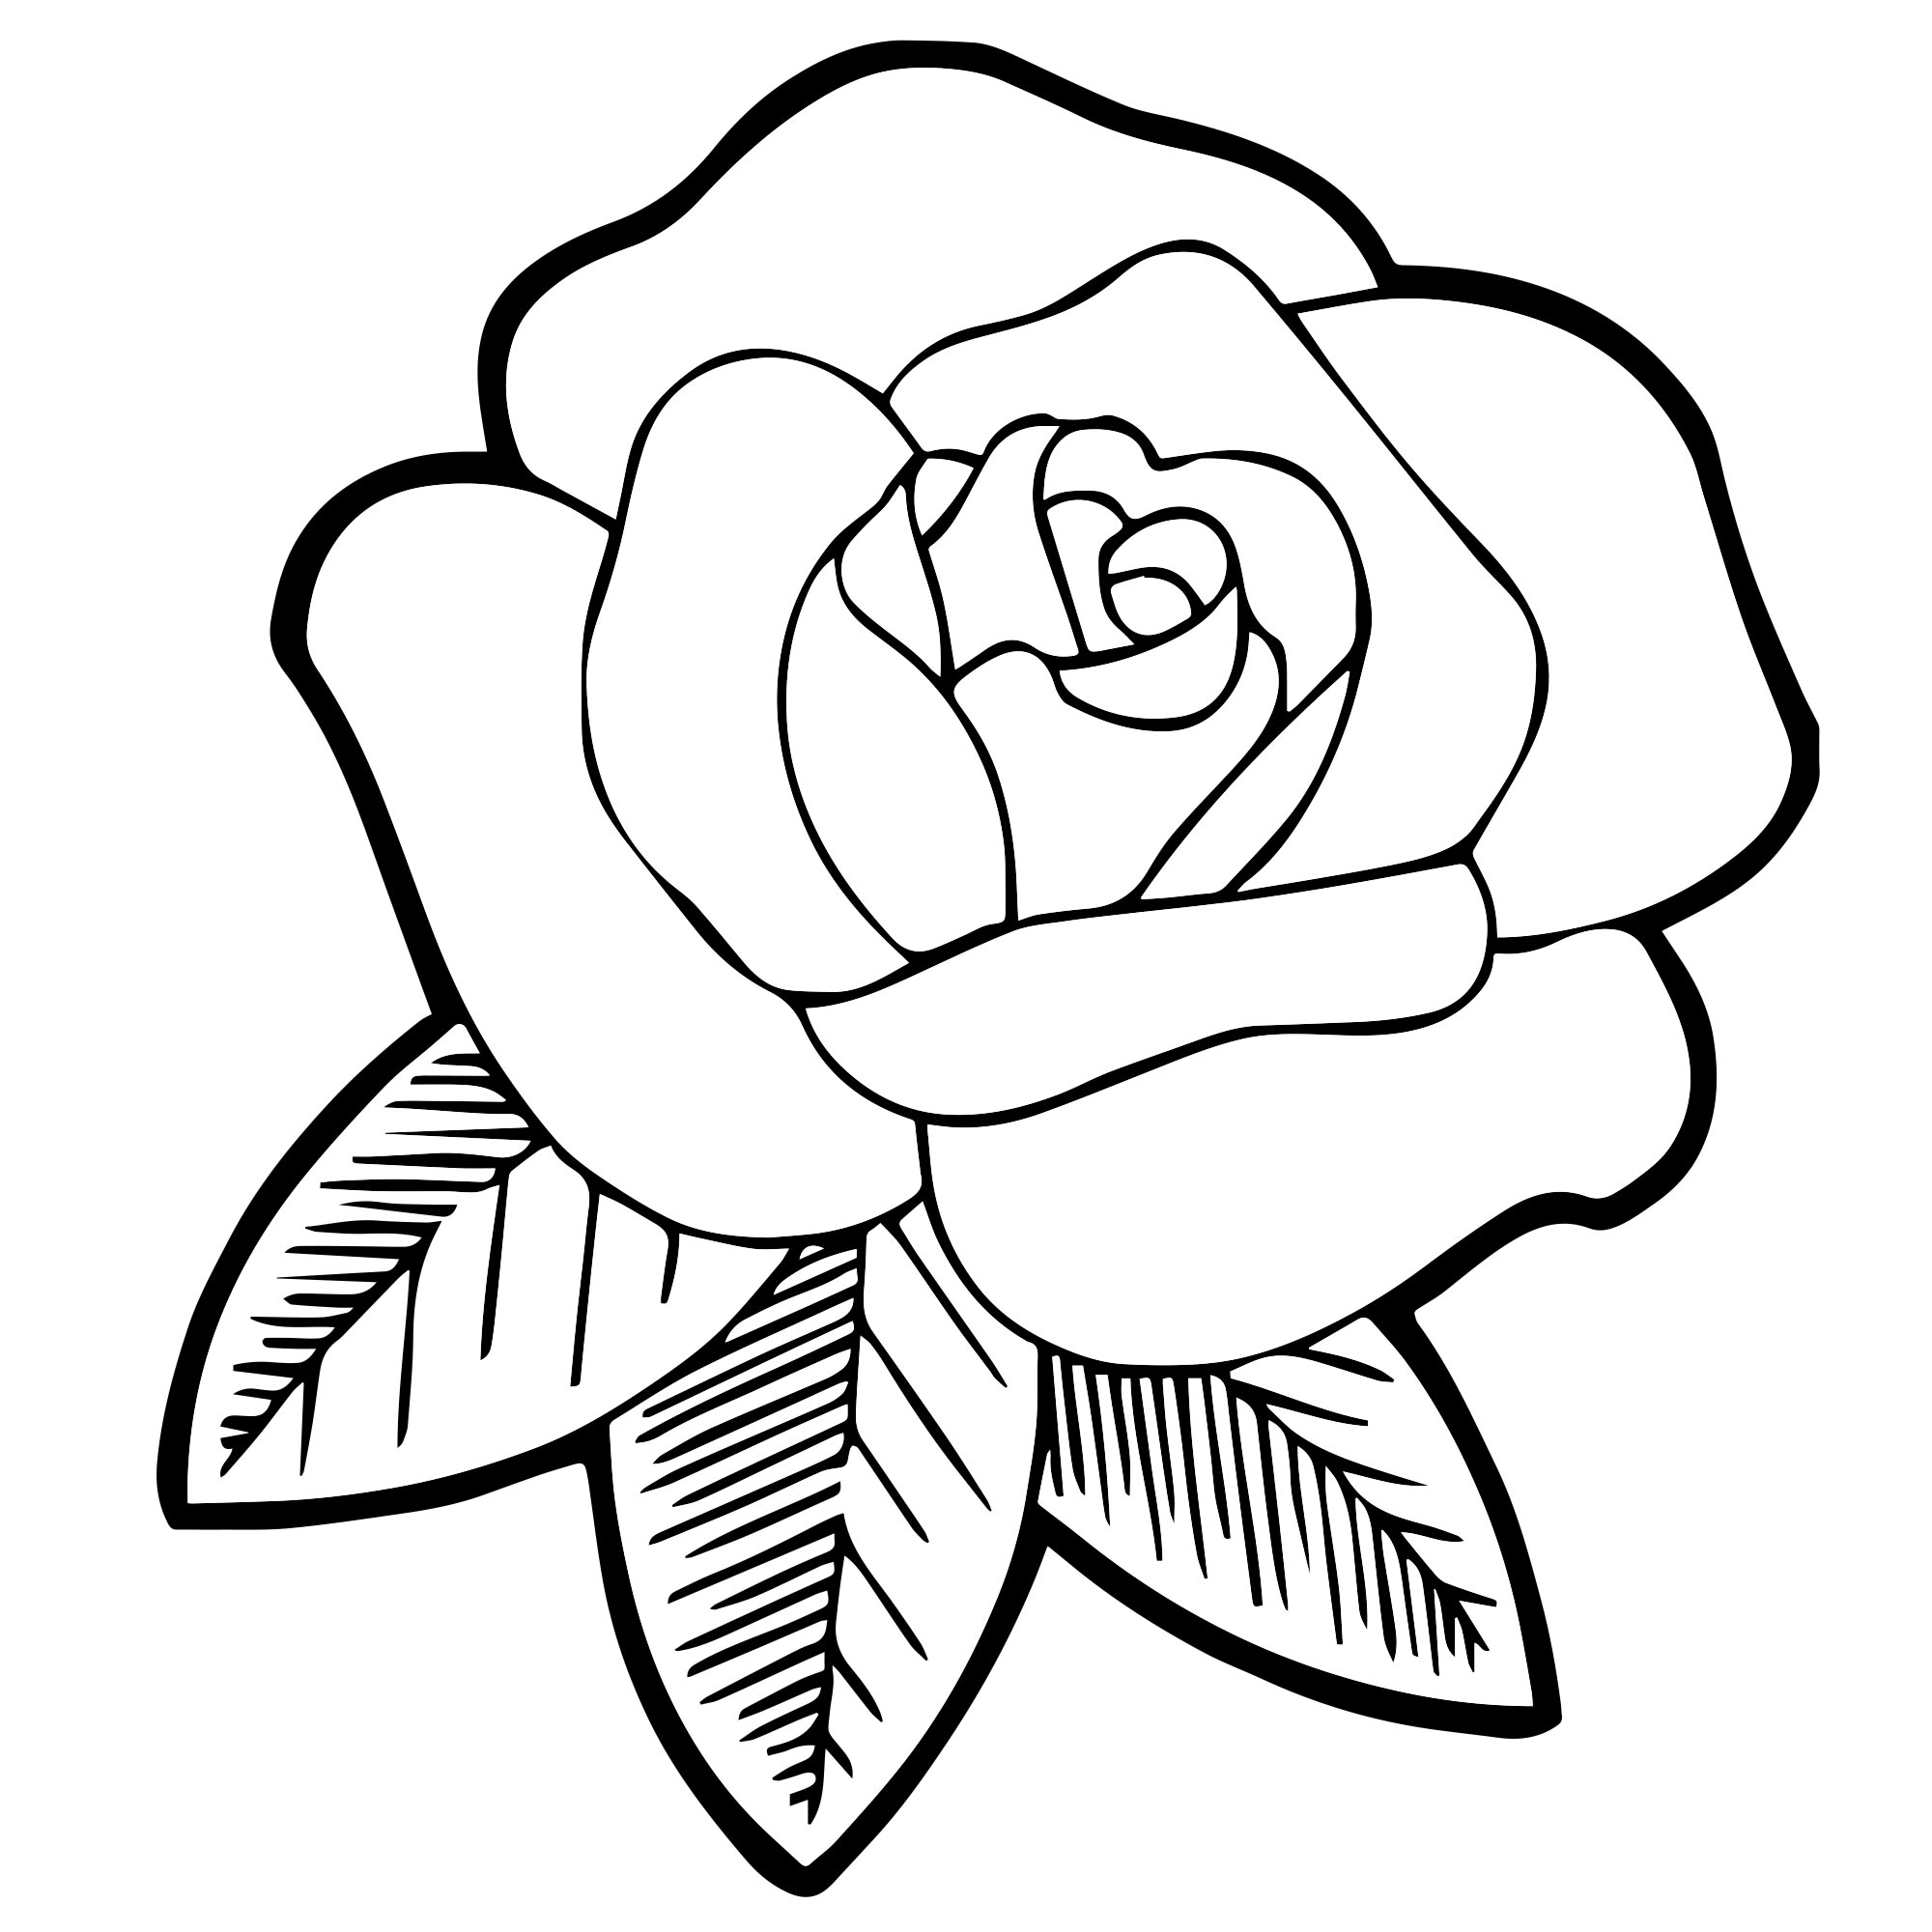 Бутон розы раскраска для детей